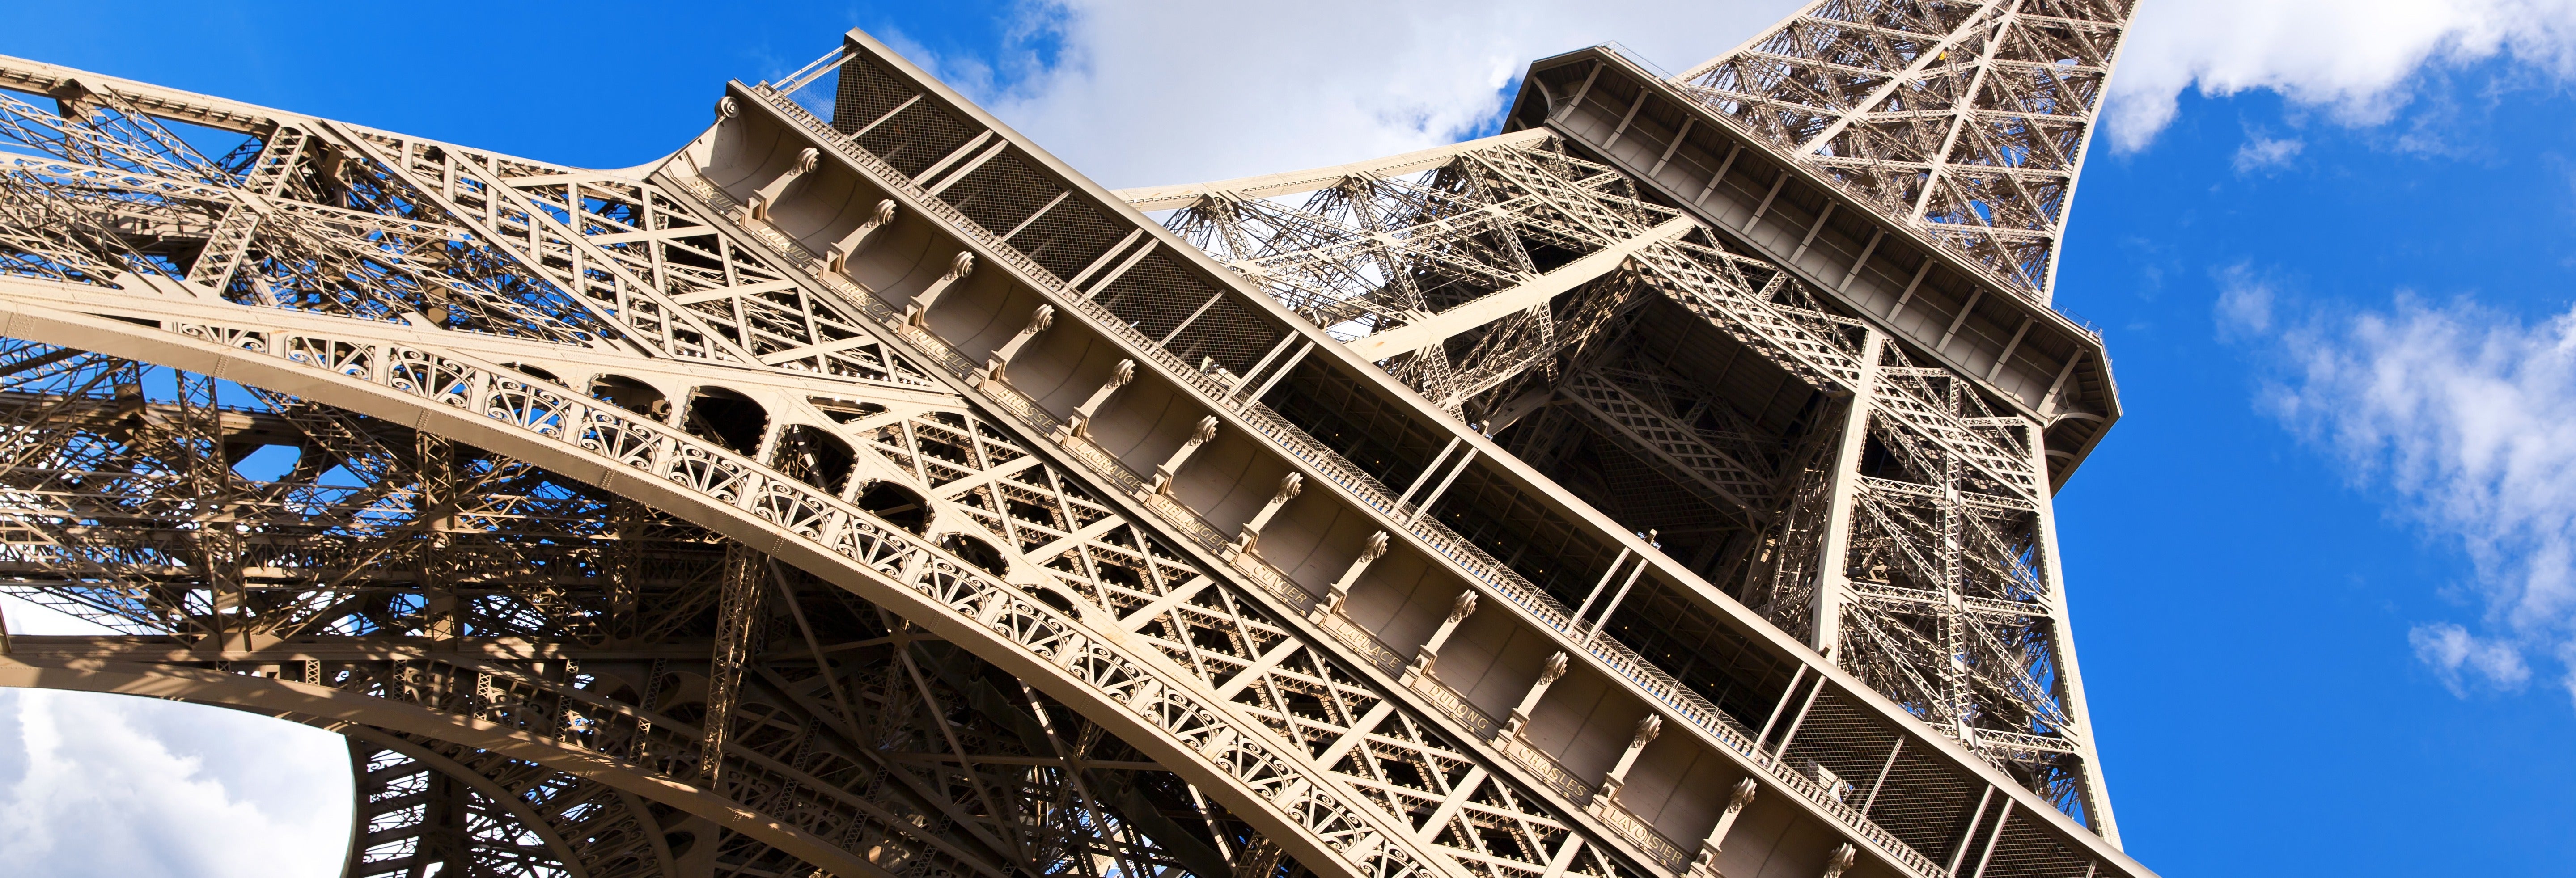 Ingresso do 2º andar da Torre Eiffel